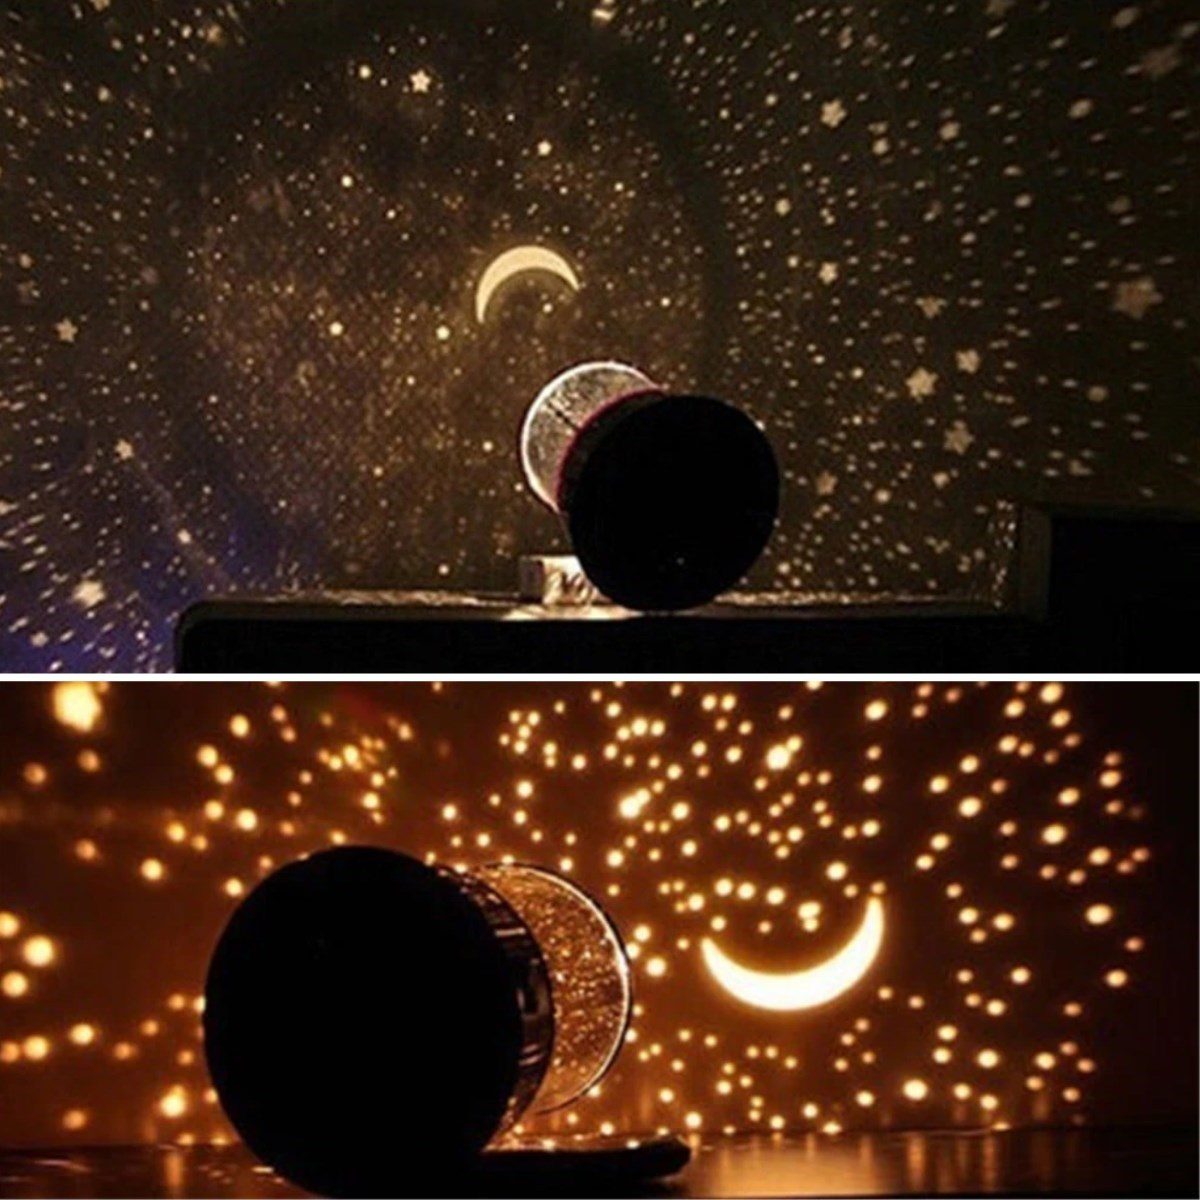 CLZ192 Star Master Pilli Gökyüzü Projeksiyonlu Led Renkli Yıldızlı Tavan Işık Yansıtma Gece Lambası (4172)